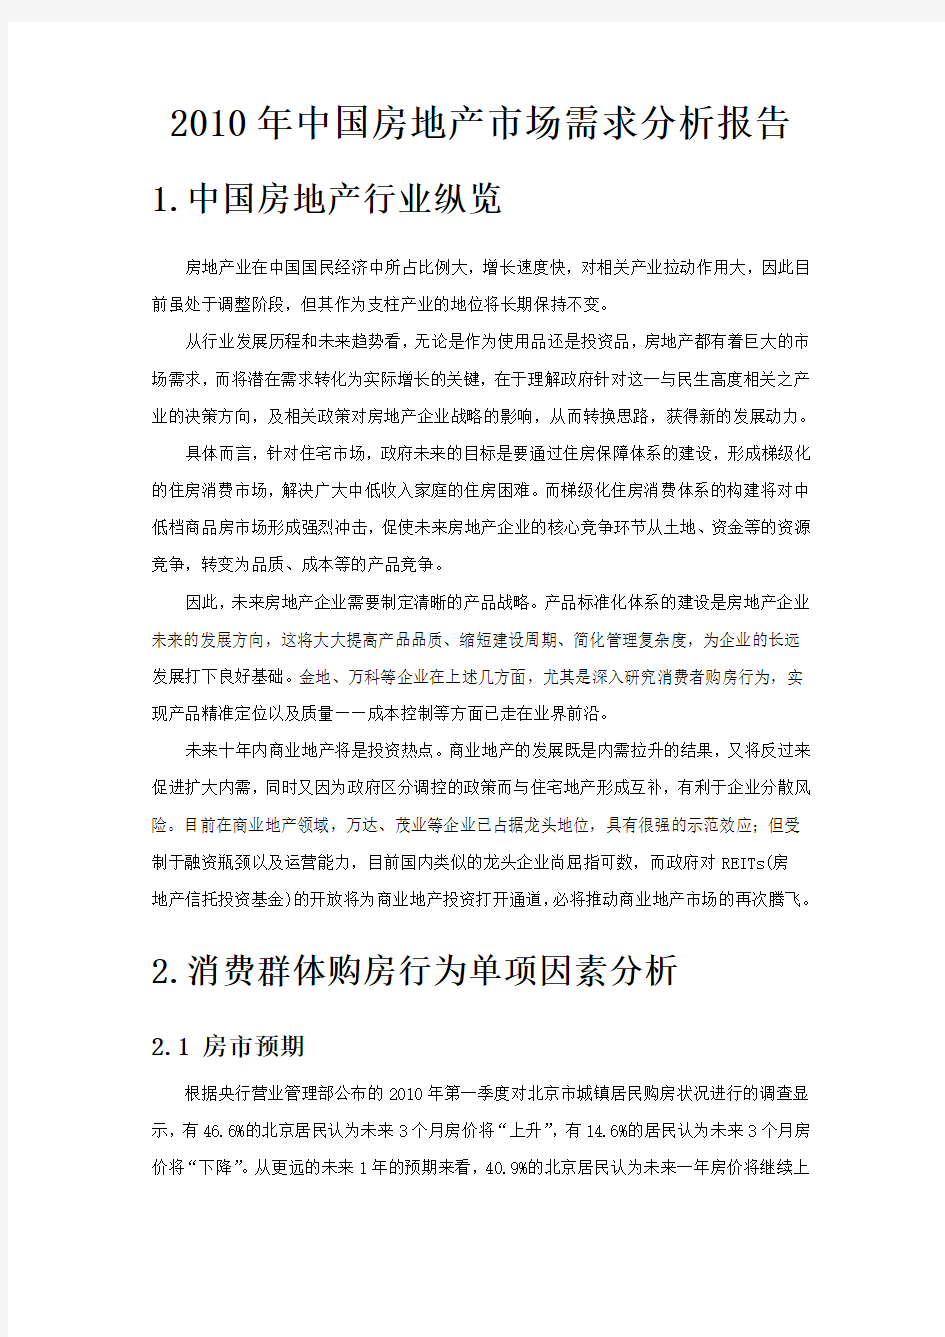 2010年中国房地产市场需求调查分析报告